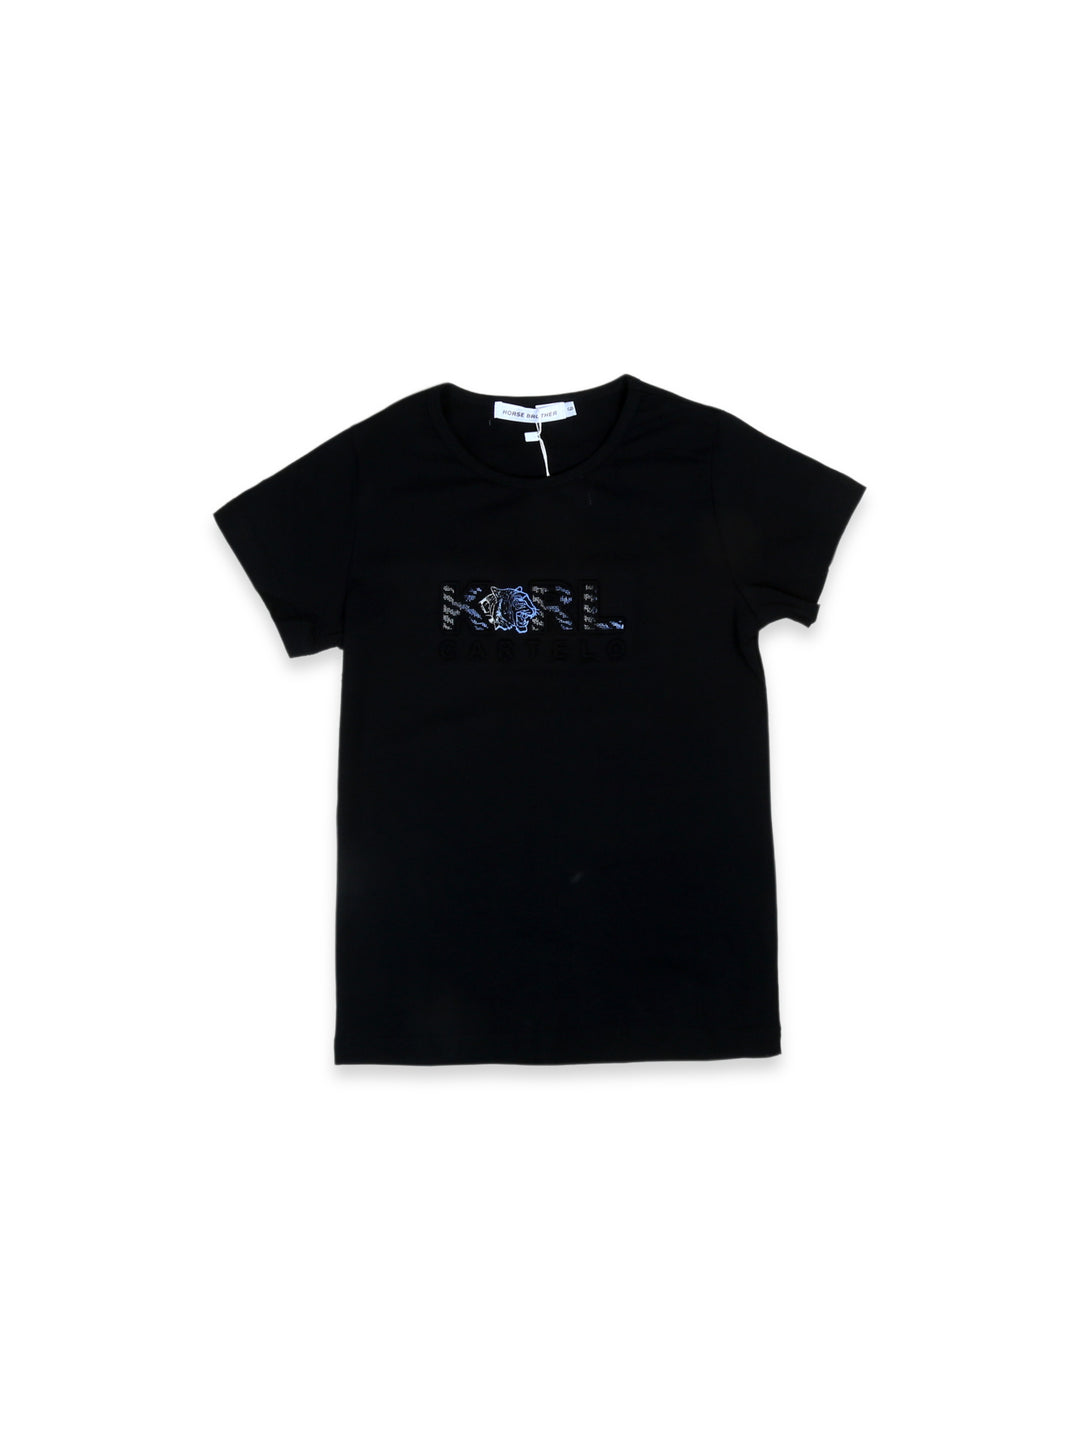 Imp Boys H/S T-Shirt #D5006-24S (S-24)